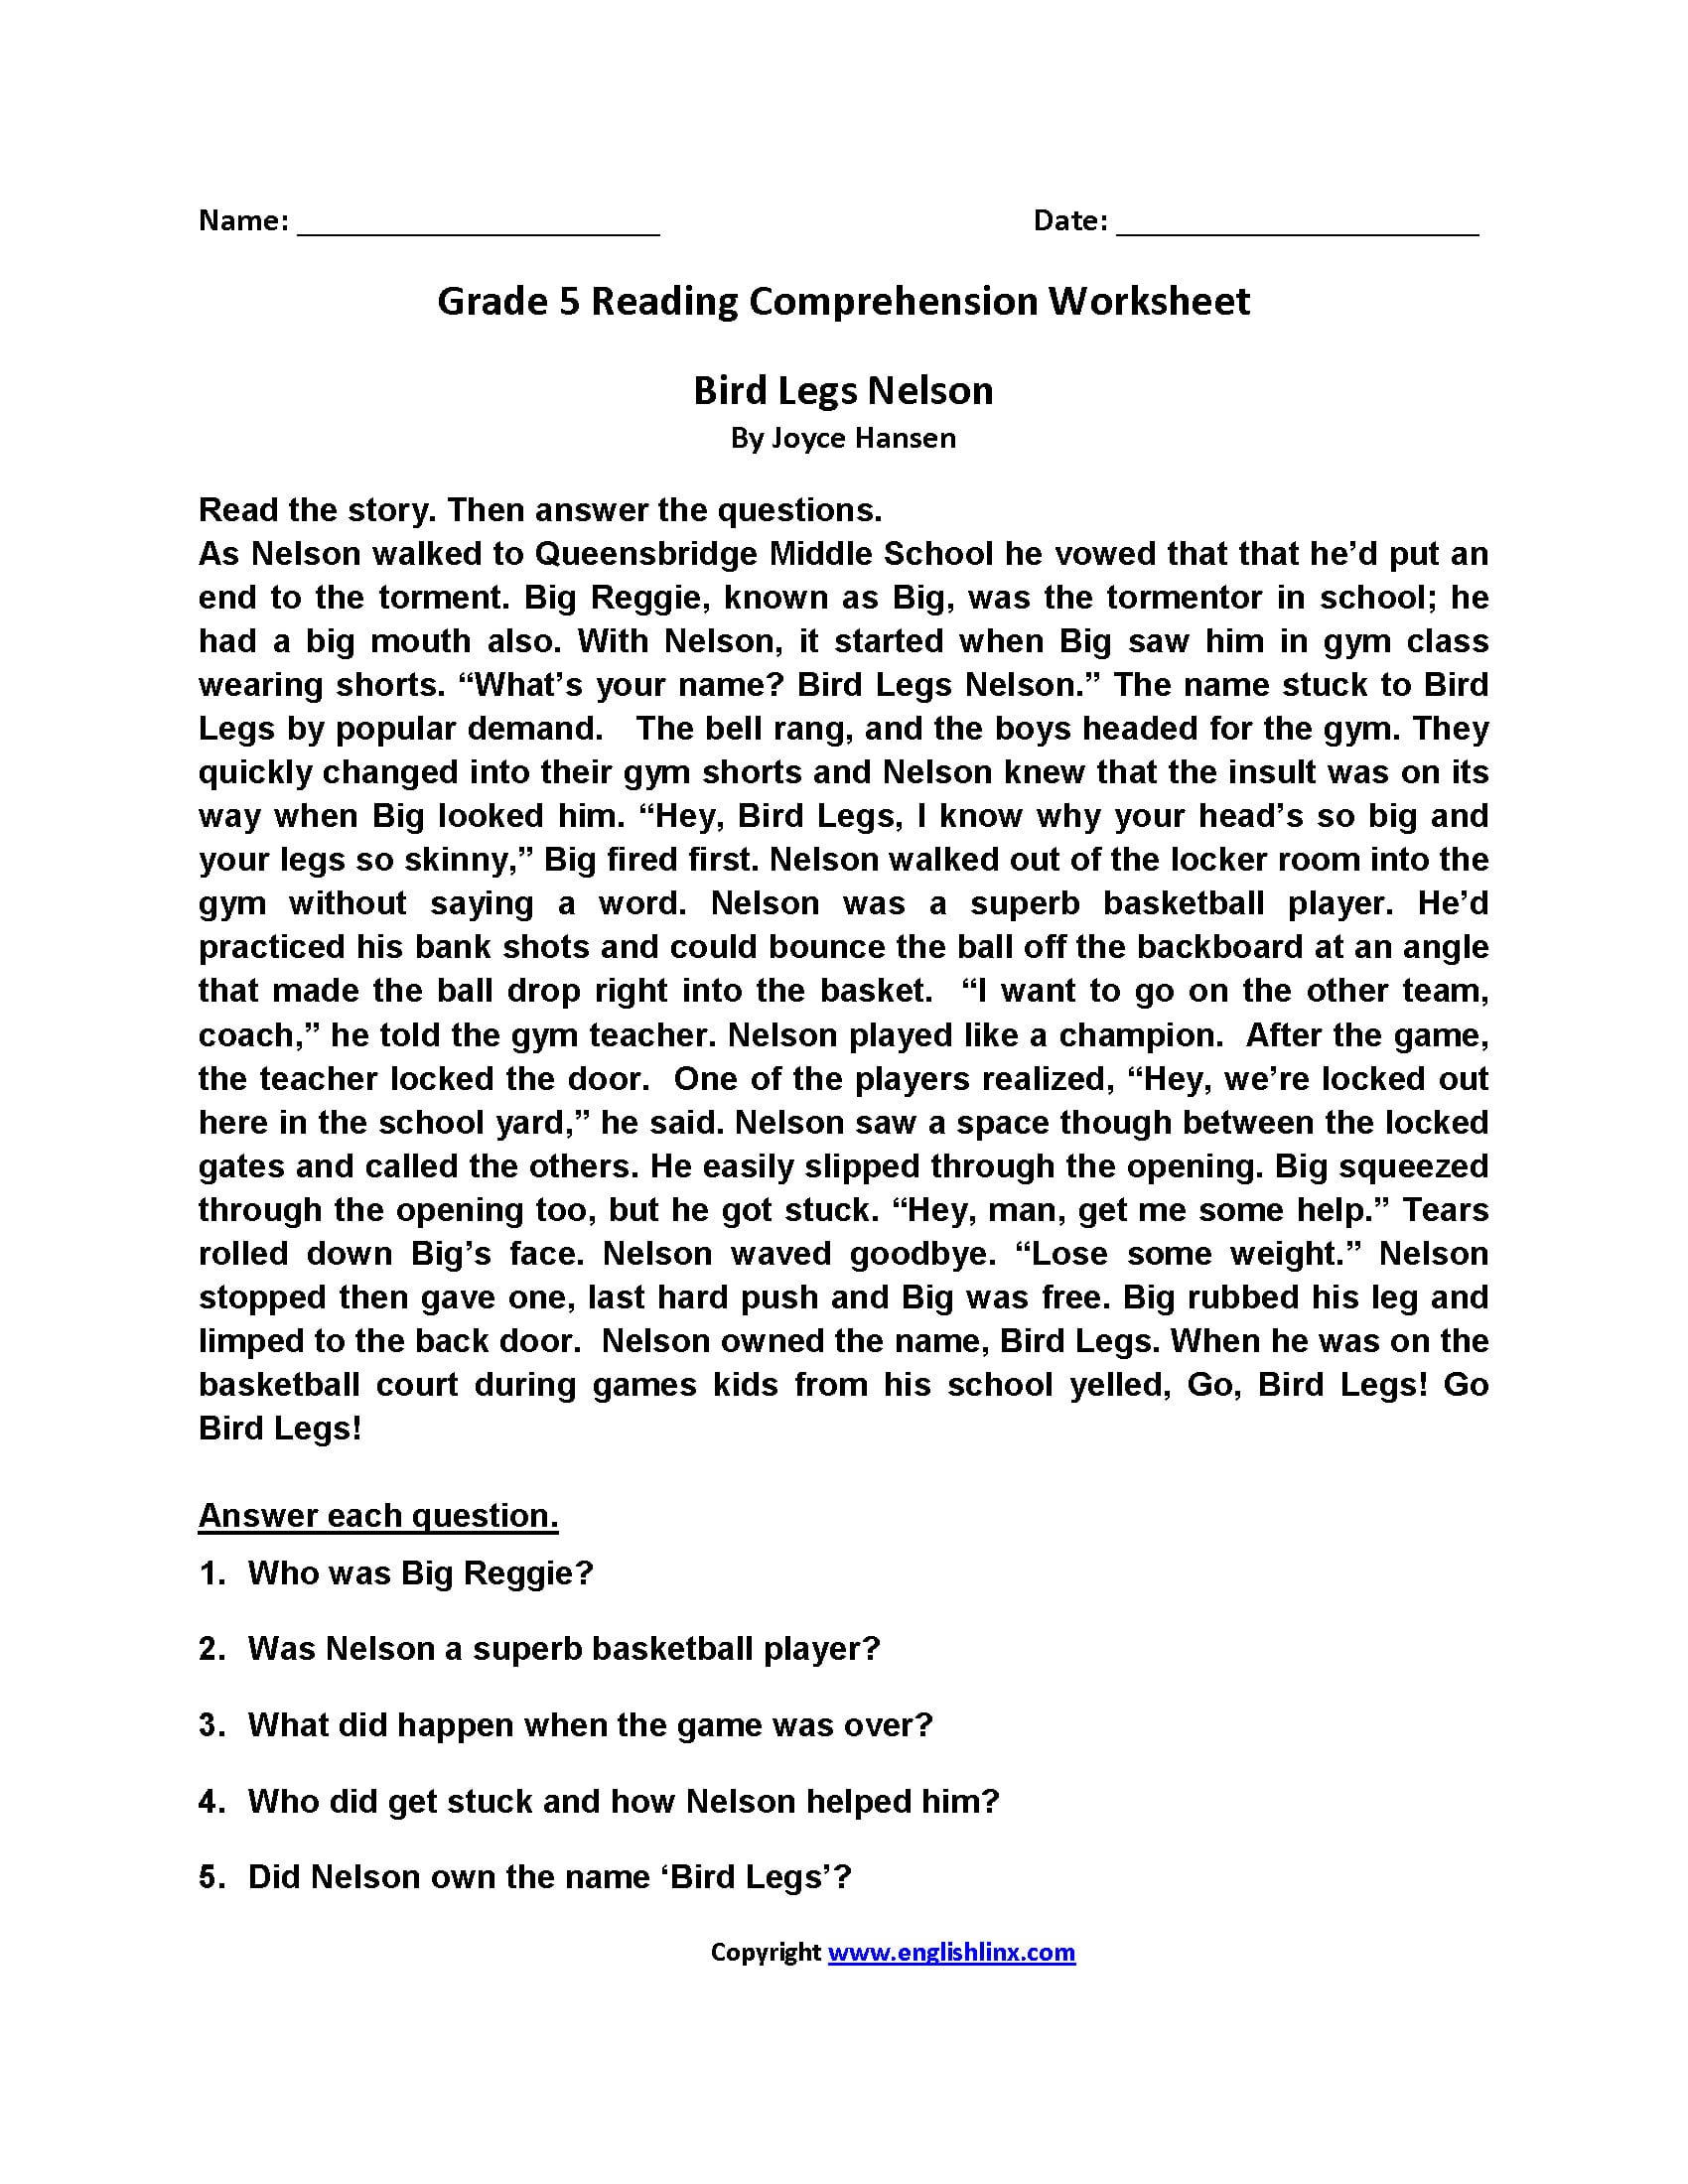 Grade 5 Reading Comprehension Worksheets Pdf db excel com